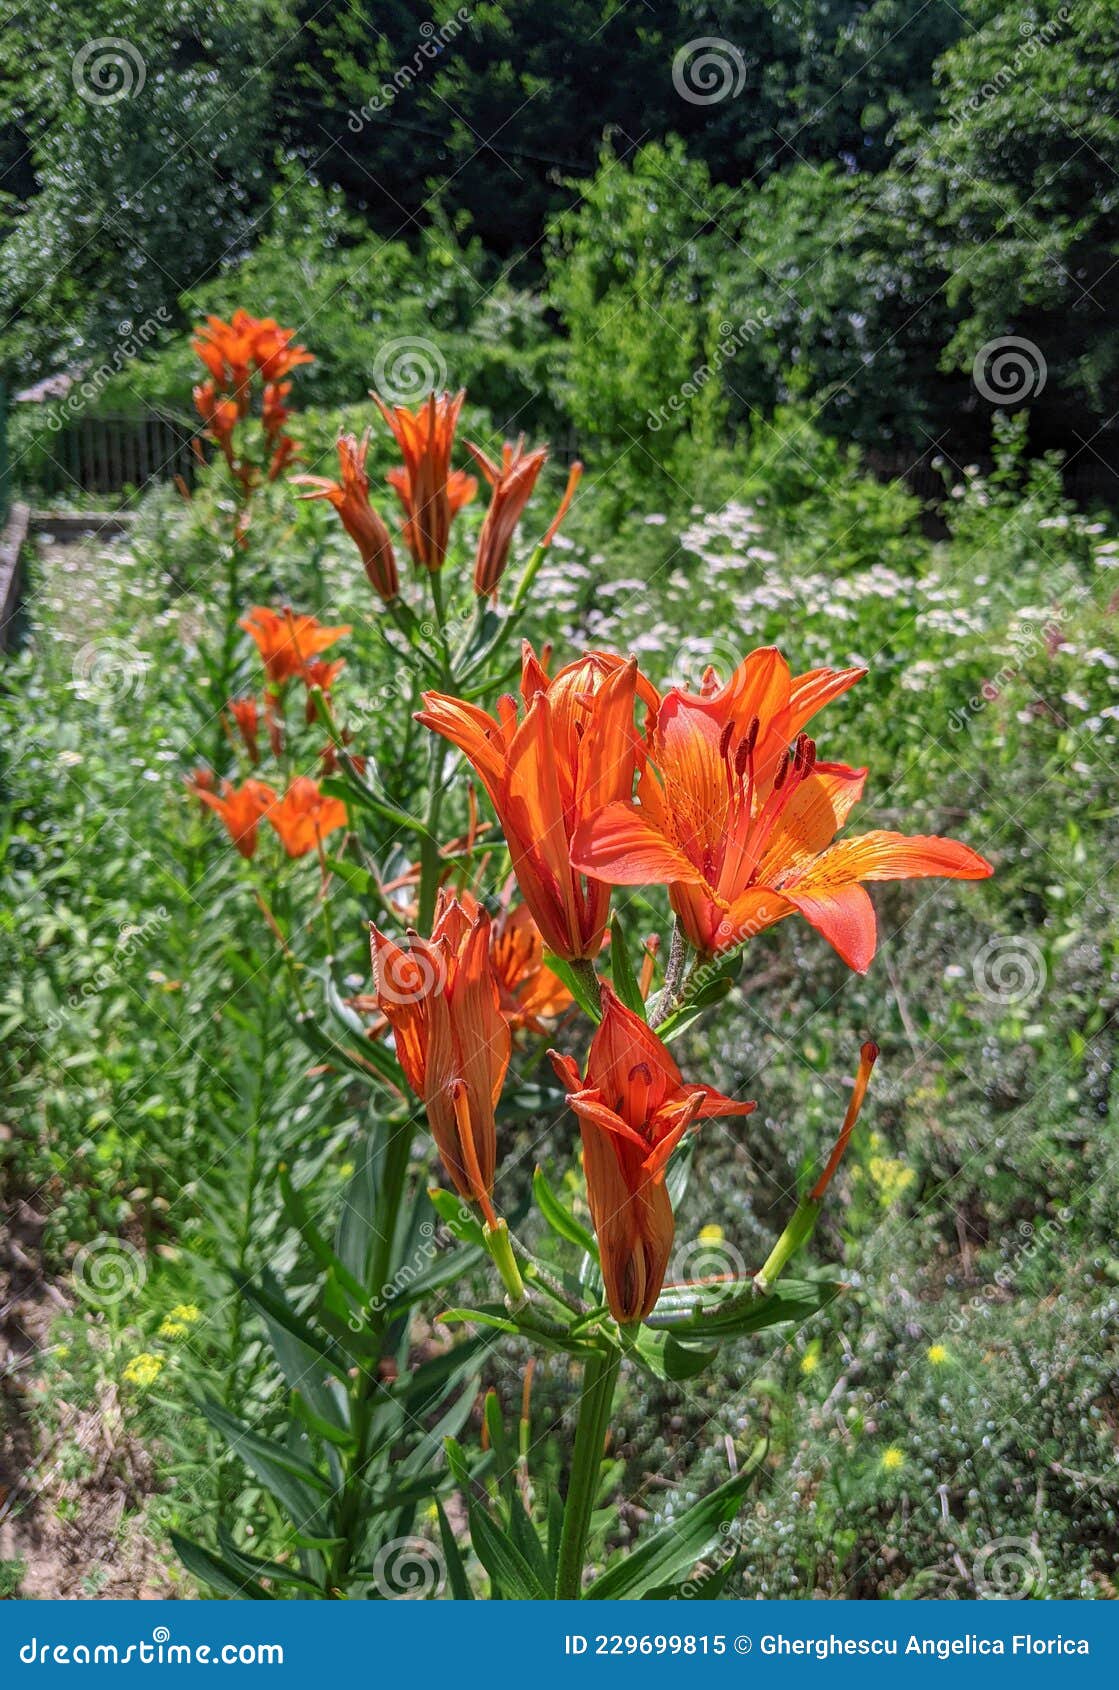 Tiger Lily Parc Dendrologique Macea Arad Comté Rouania Image stock - Image  du jardin, fleurs: 229699815